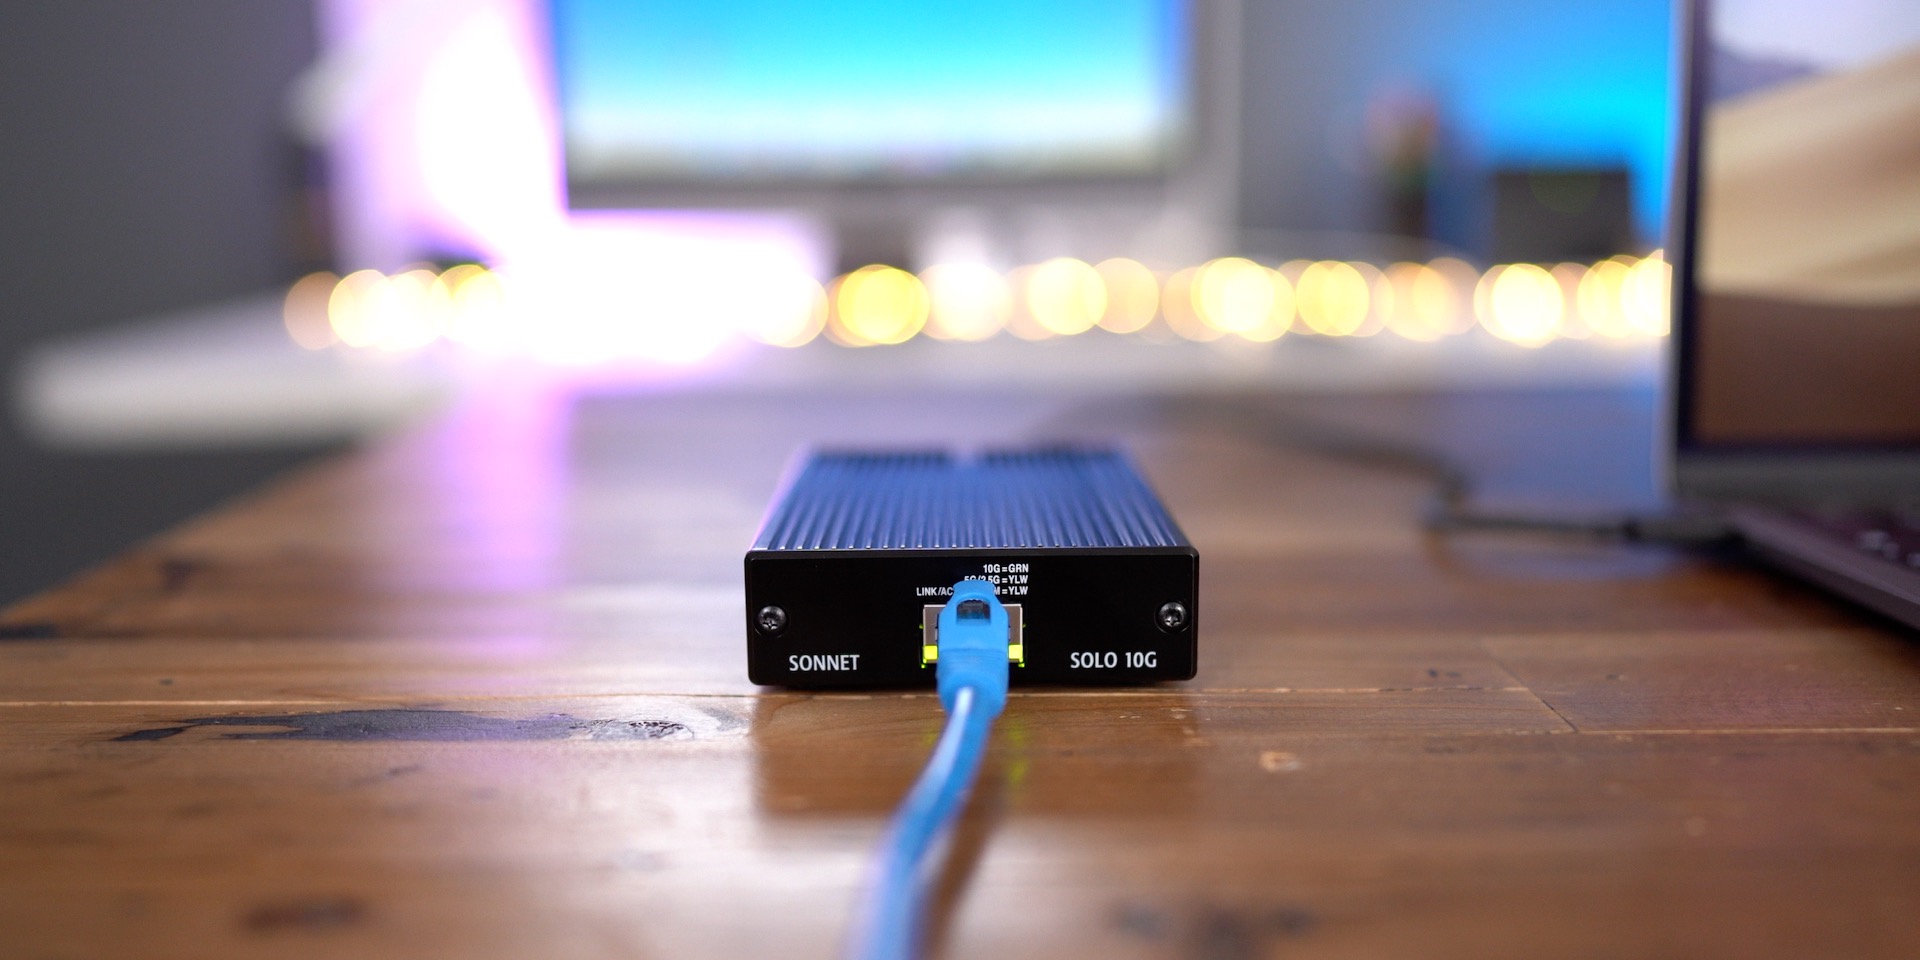 budget Forenkle Beskrive Sonnet Solo 10G Thunderbolt 3 10-Gigabit Ethernet adapter review